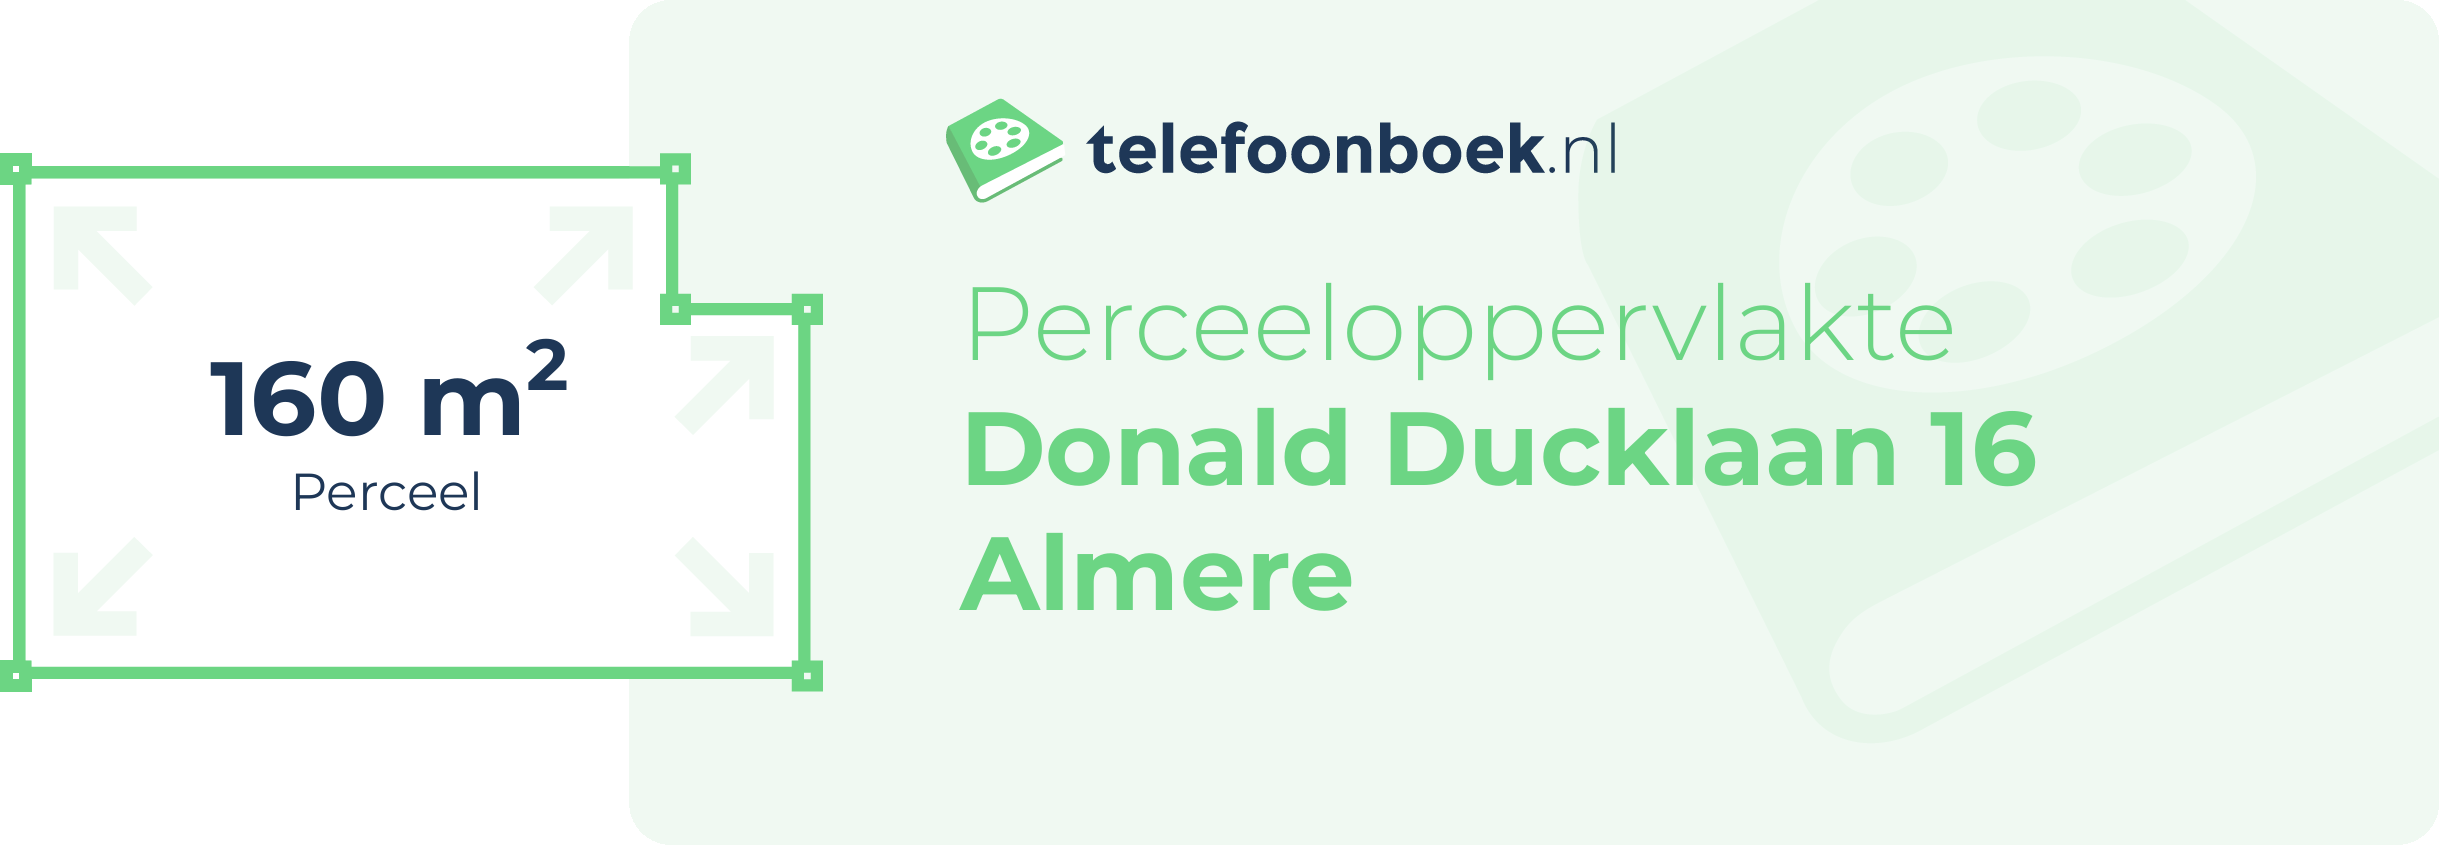 Perceeloppervlakte Donald Ducklaan 16 Almere